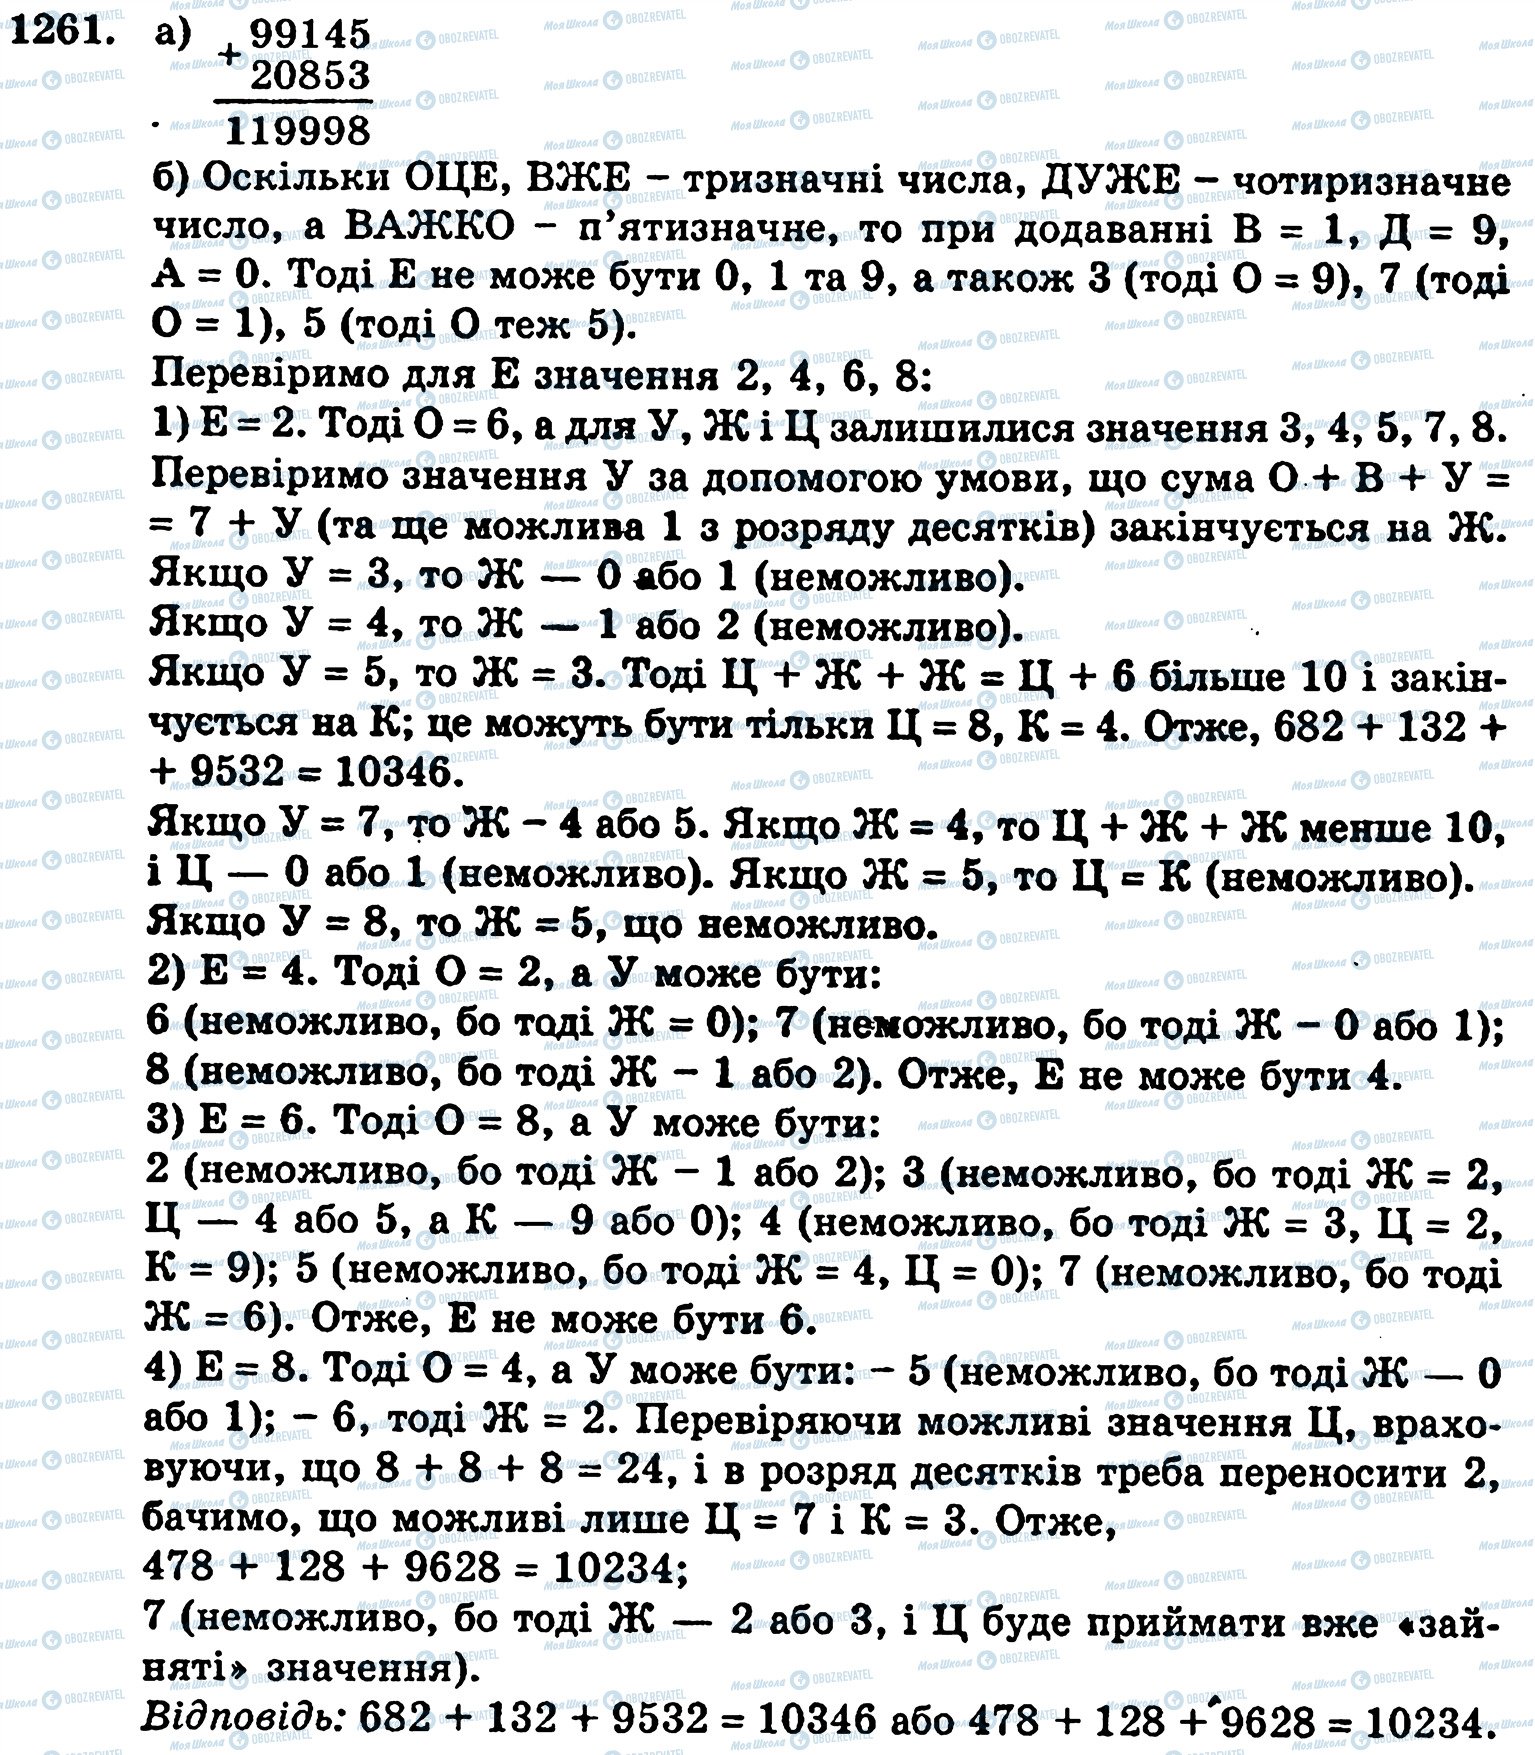 ГДЗ Математика 5 класс страница 1261